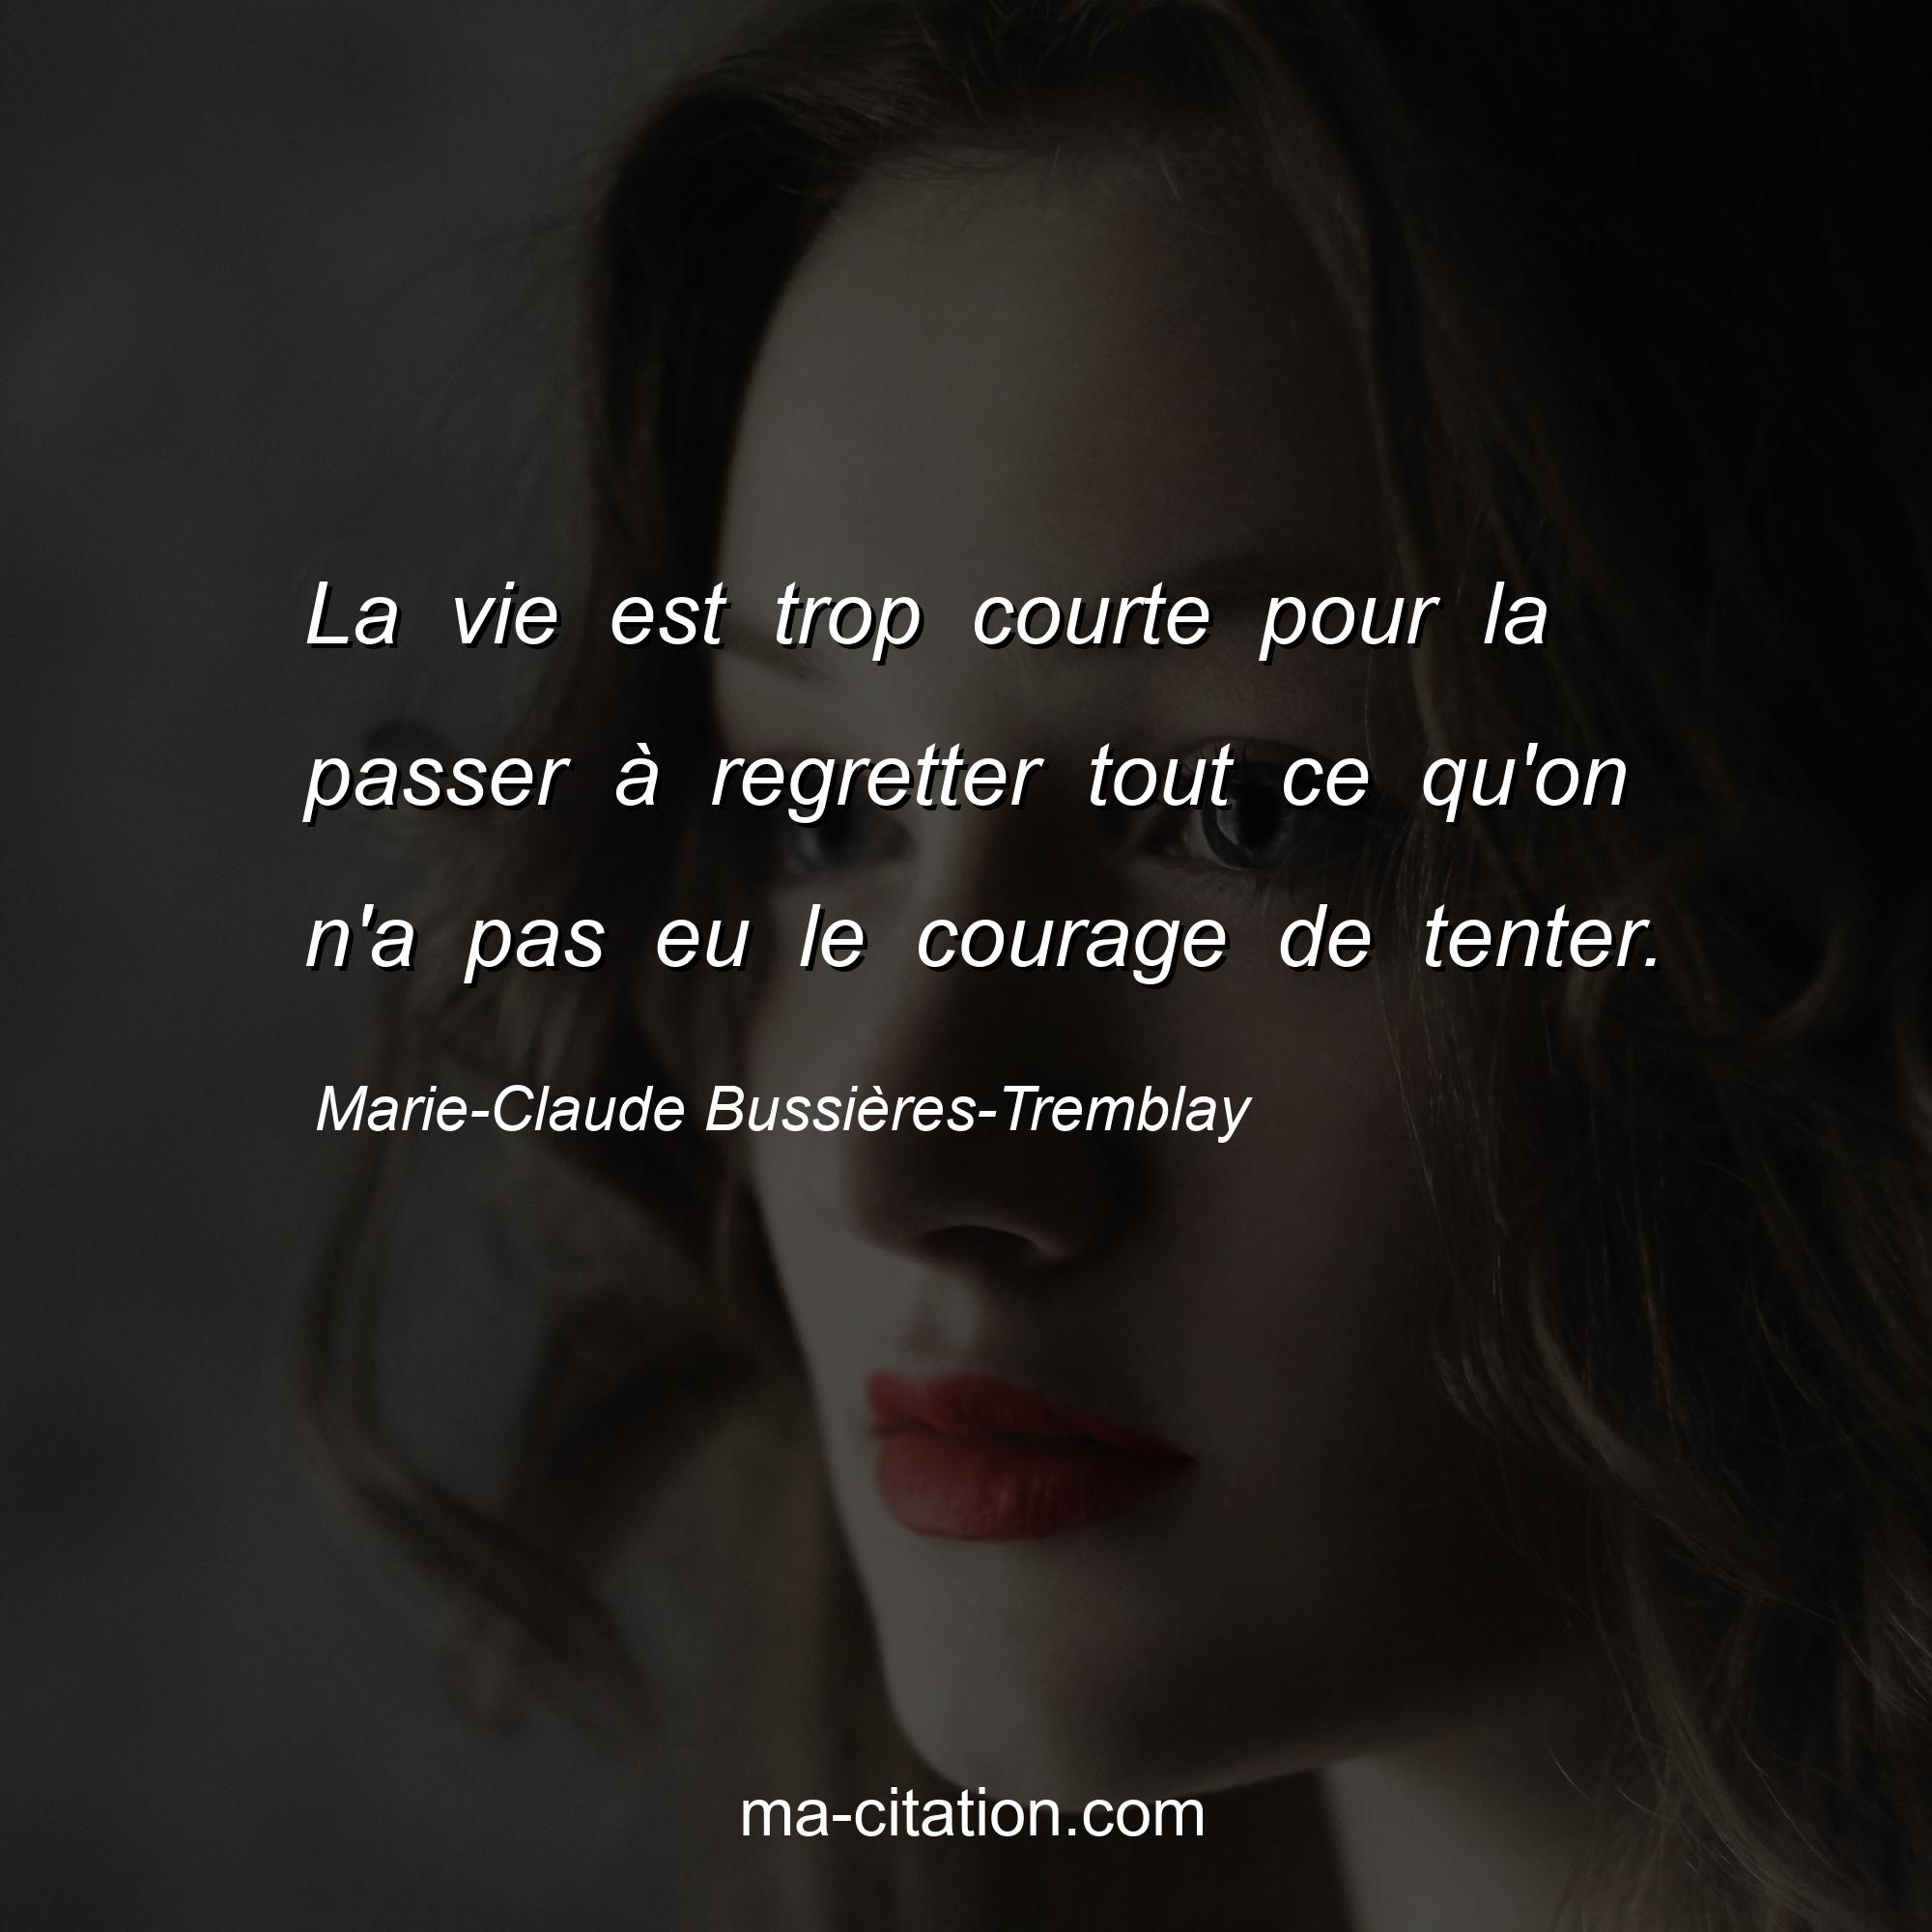 Marie-Claude Bussières-Tremblay : La vie est trop courte pour la passer à regretter tout ce qu'on n'a pas eu le courage de tenter.